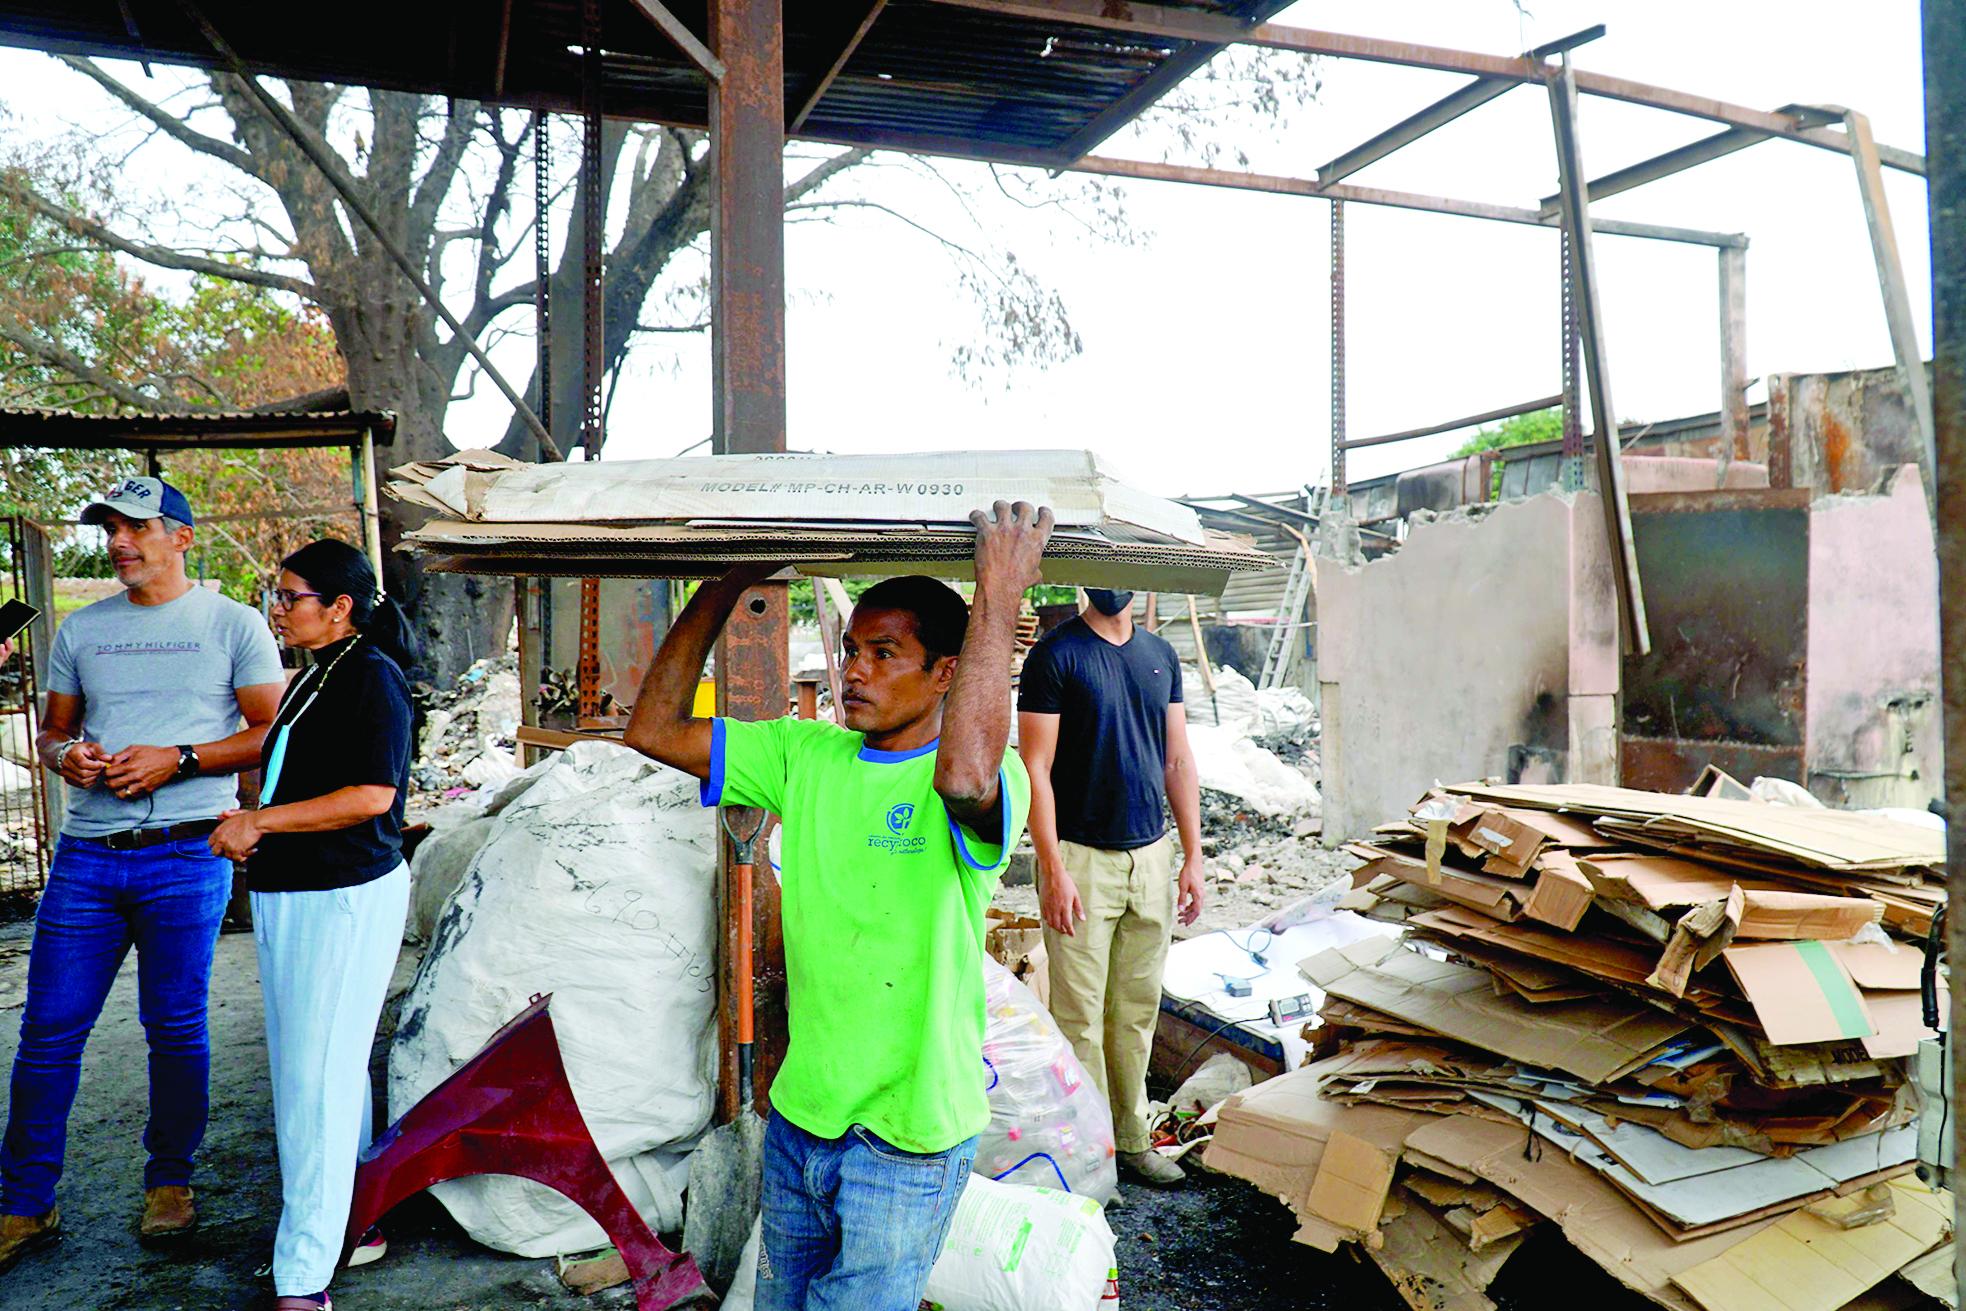 La recicladora es una fuente de empleo en la ciudad de San Pedro Sula.